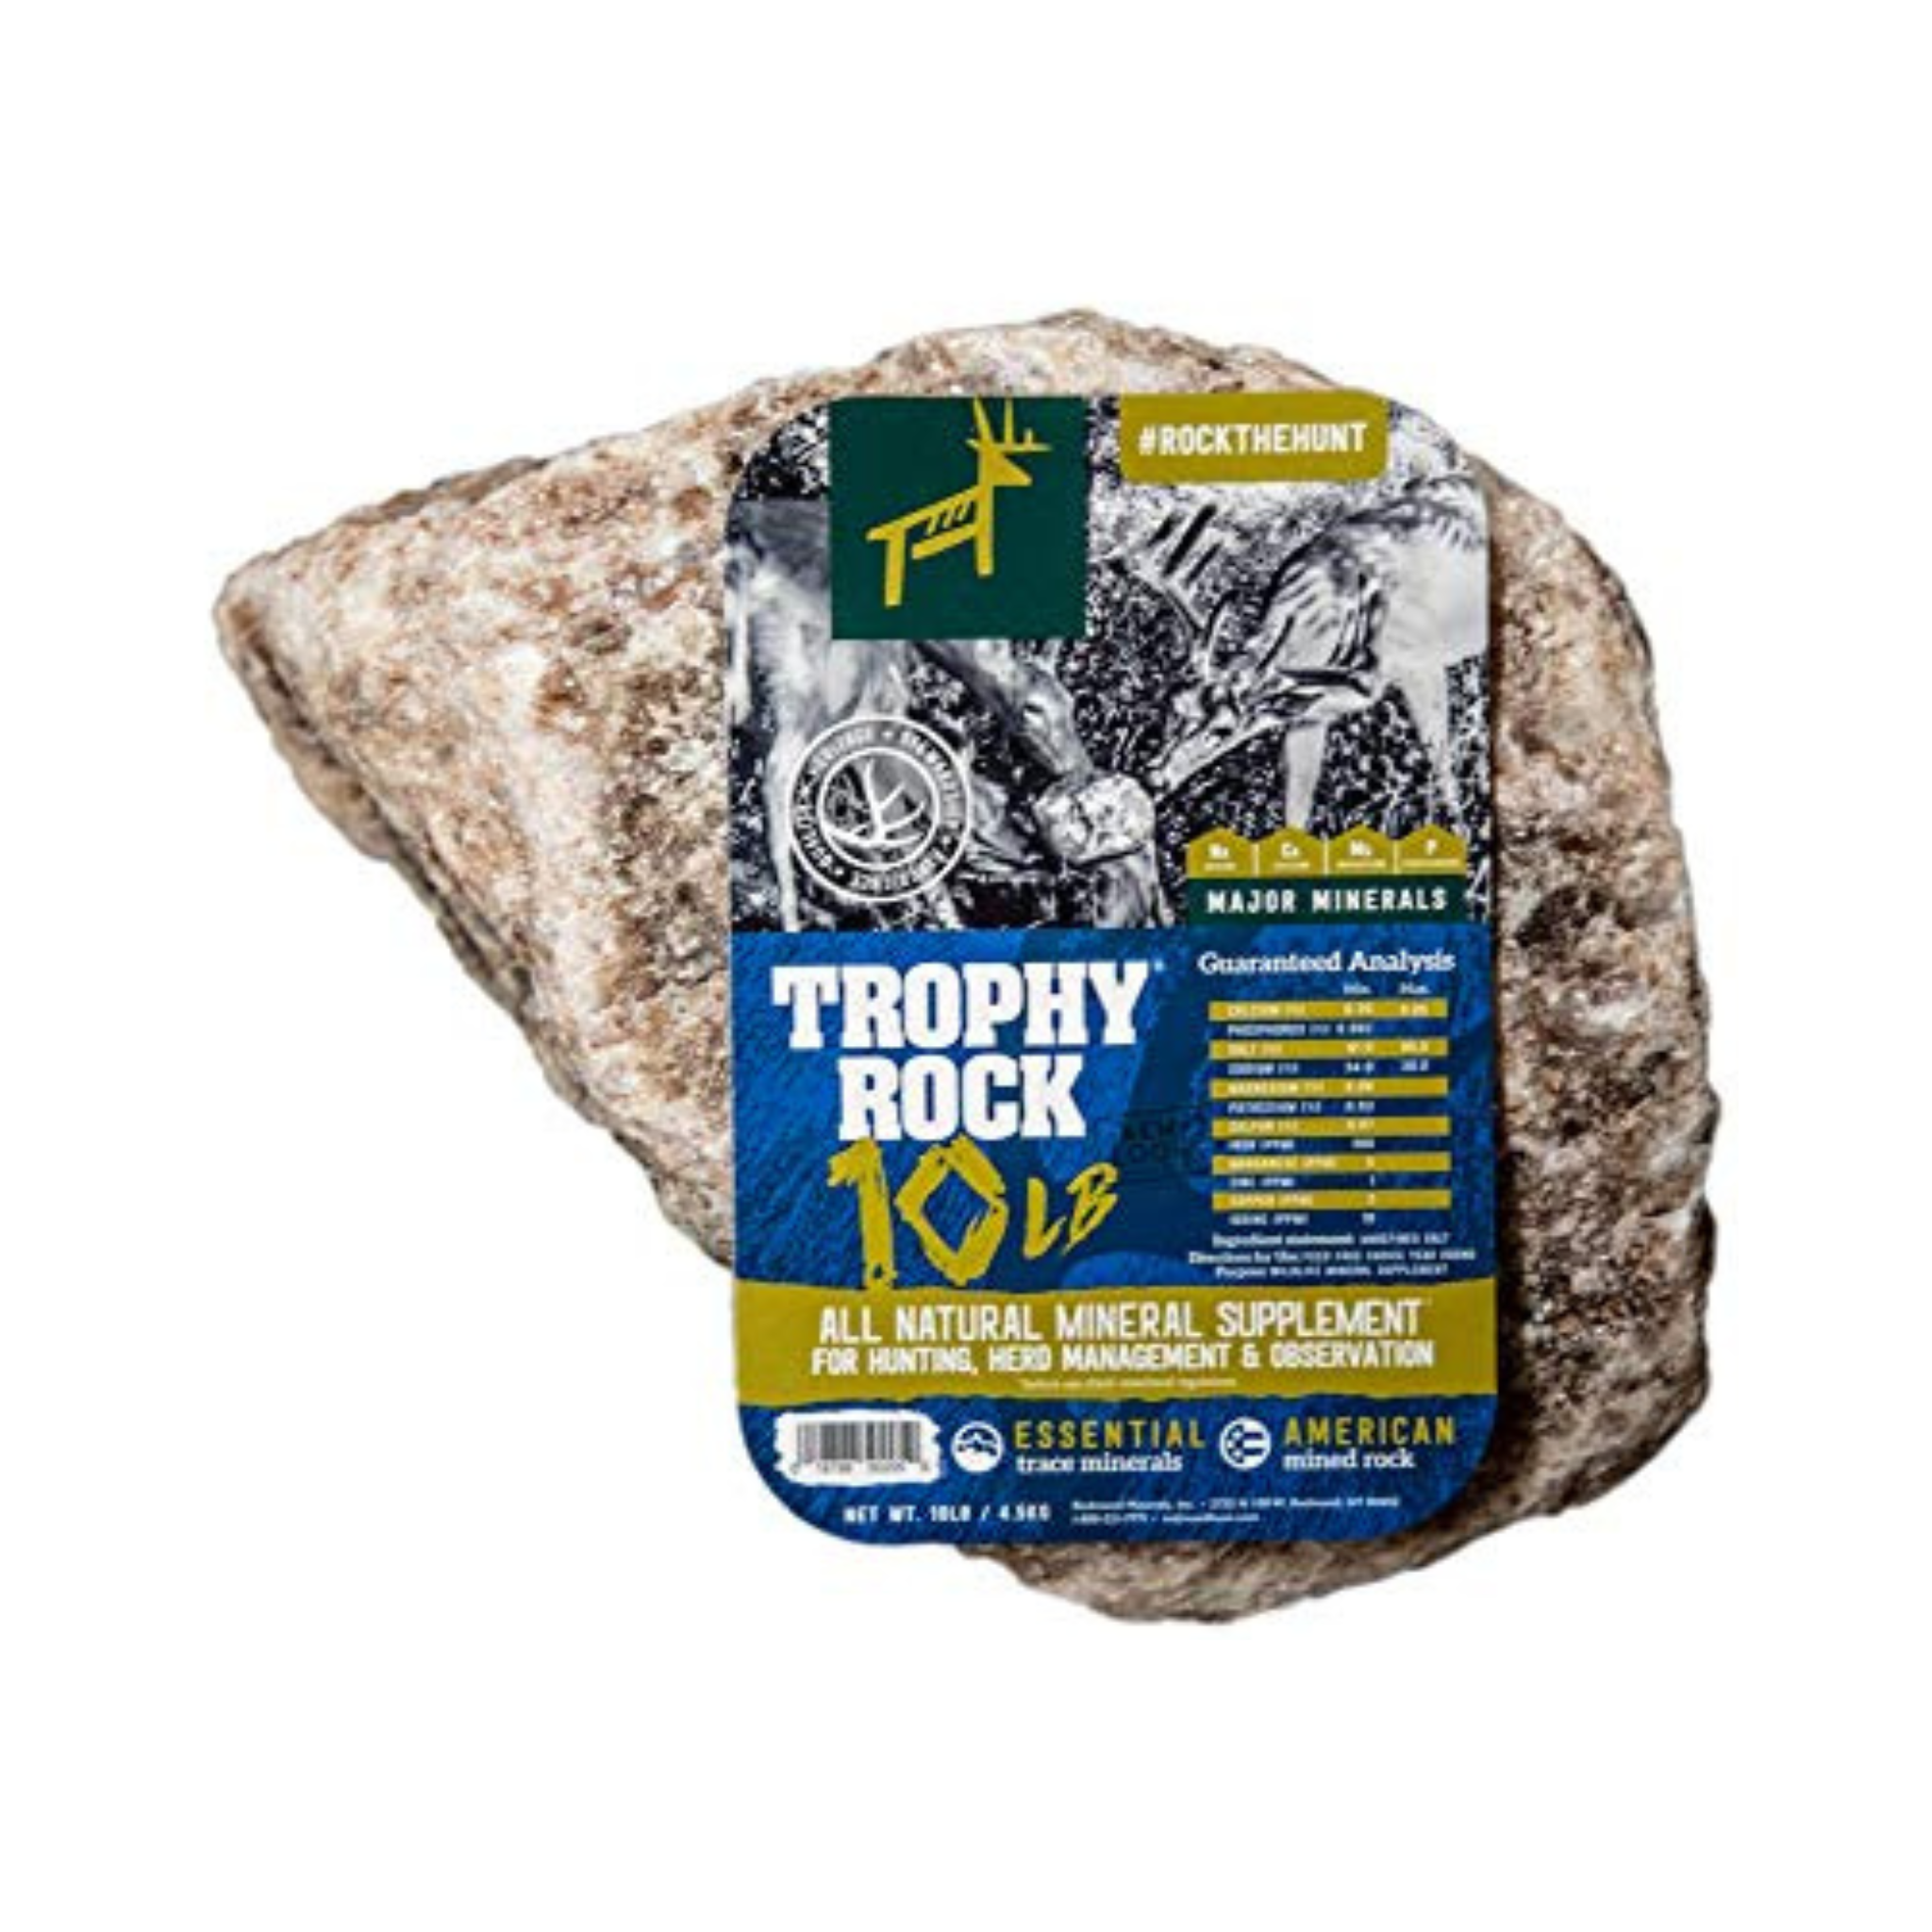 Trophy Rock Deer Supplement